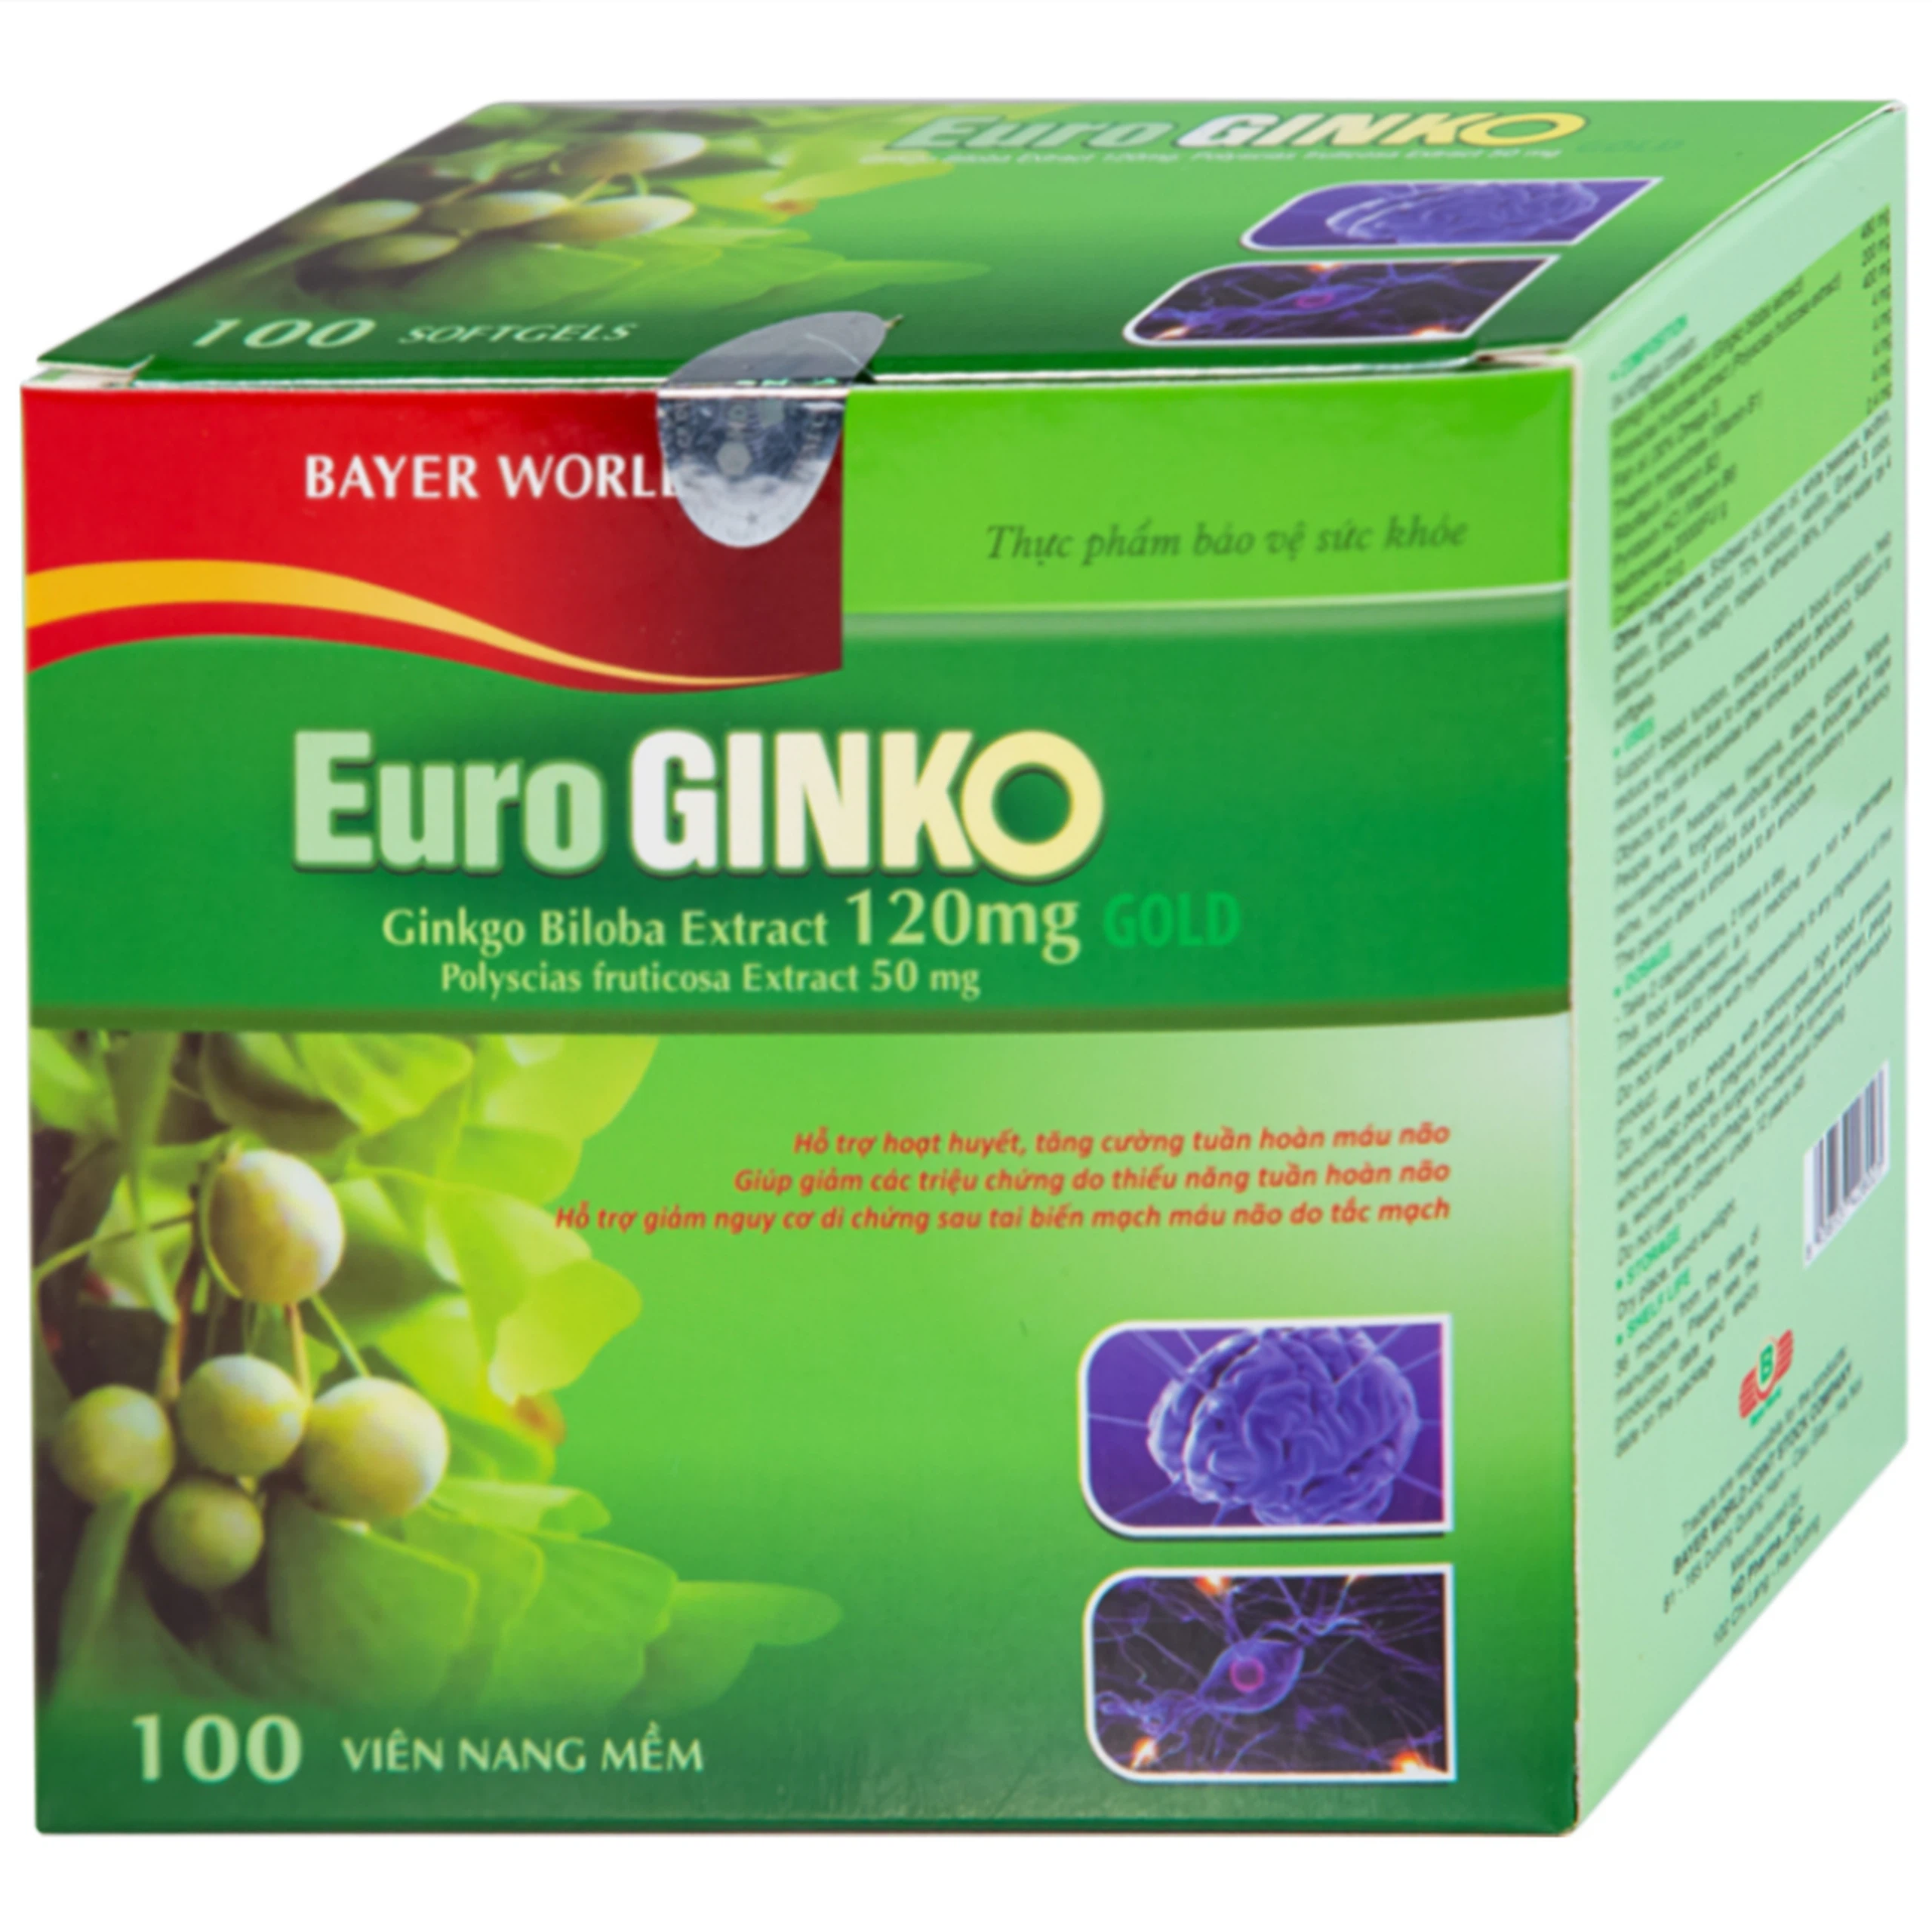 Viên uống Euro Ginko Gold HD Pharma hỗ trợ hoạt huyết, tăng cường tuần hoàn máu não (100 viên)